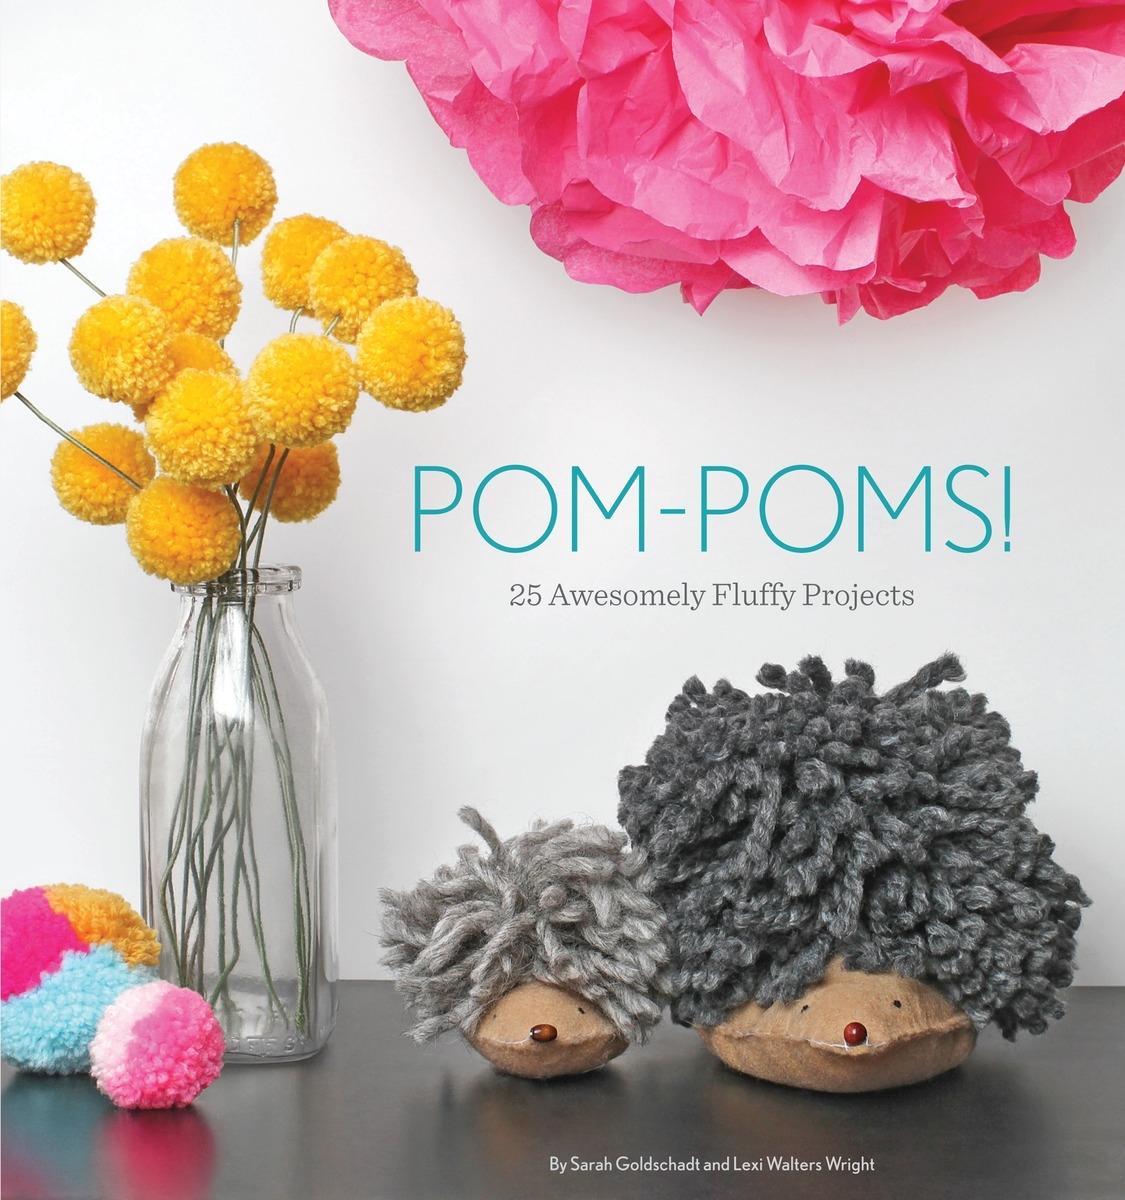 Patty Pom-Poms by Alise Cayen